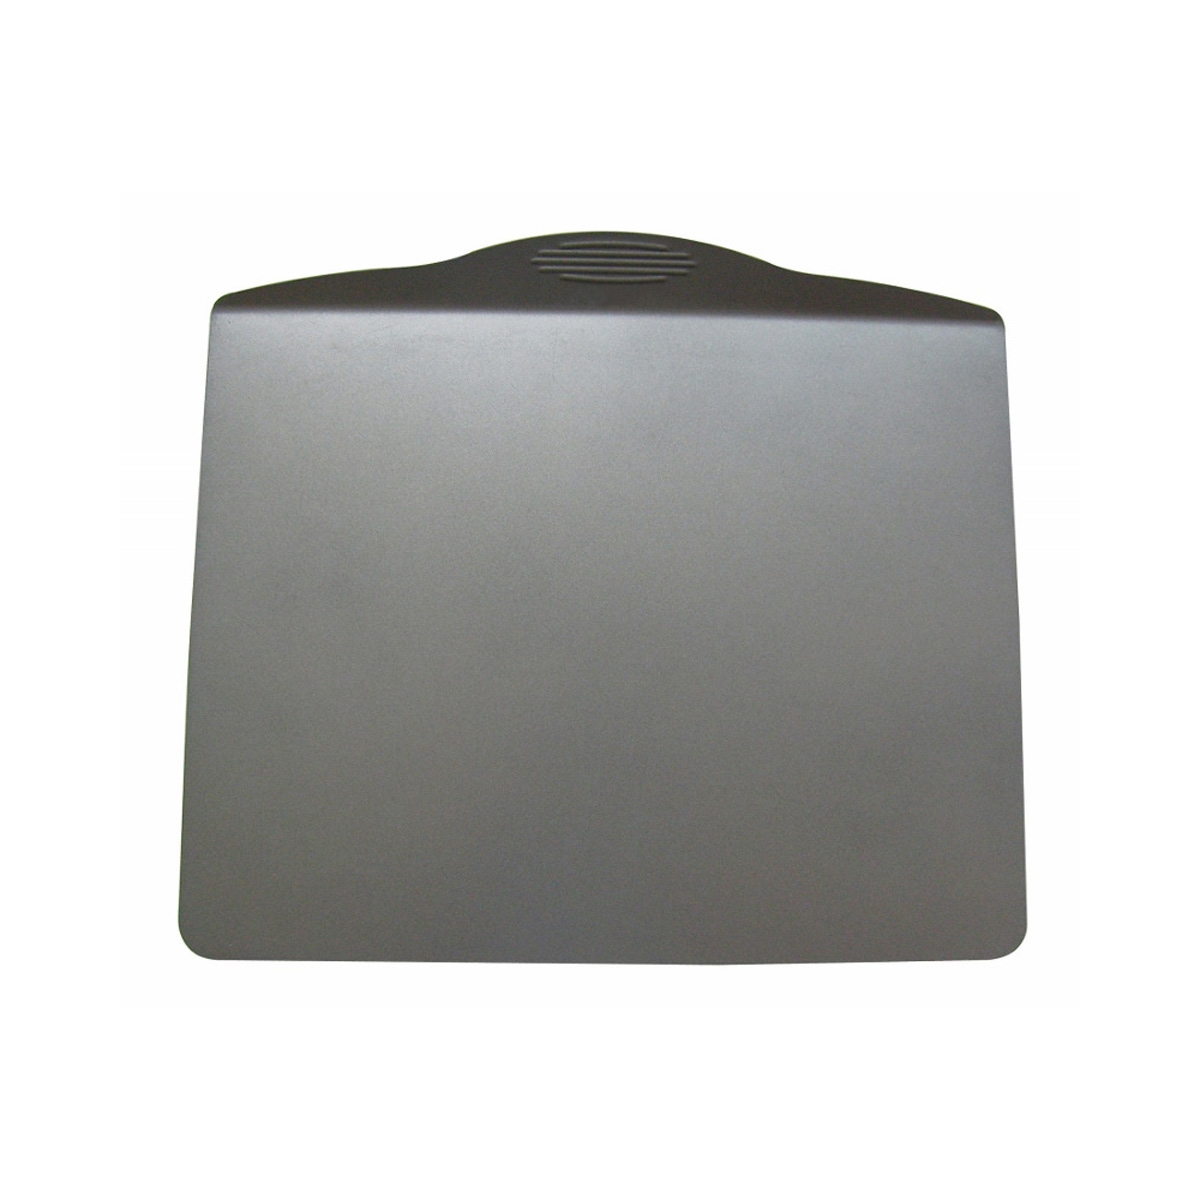 de Buyer Patisserie doppelwandiges Backblech 35,5x27,5 cm / aus Stahl mit Antihaftbeschichtung